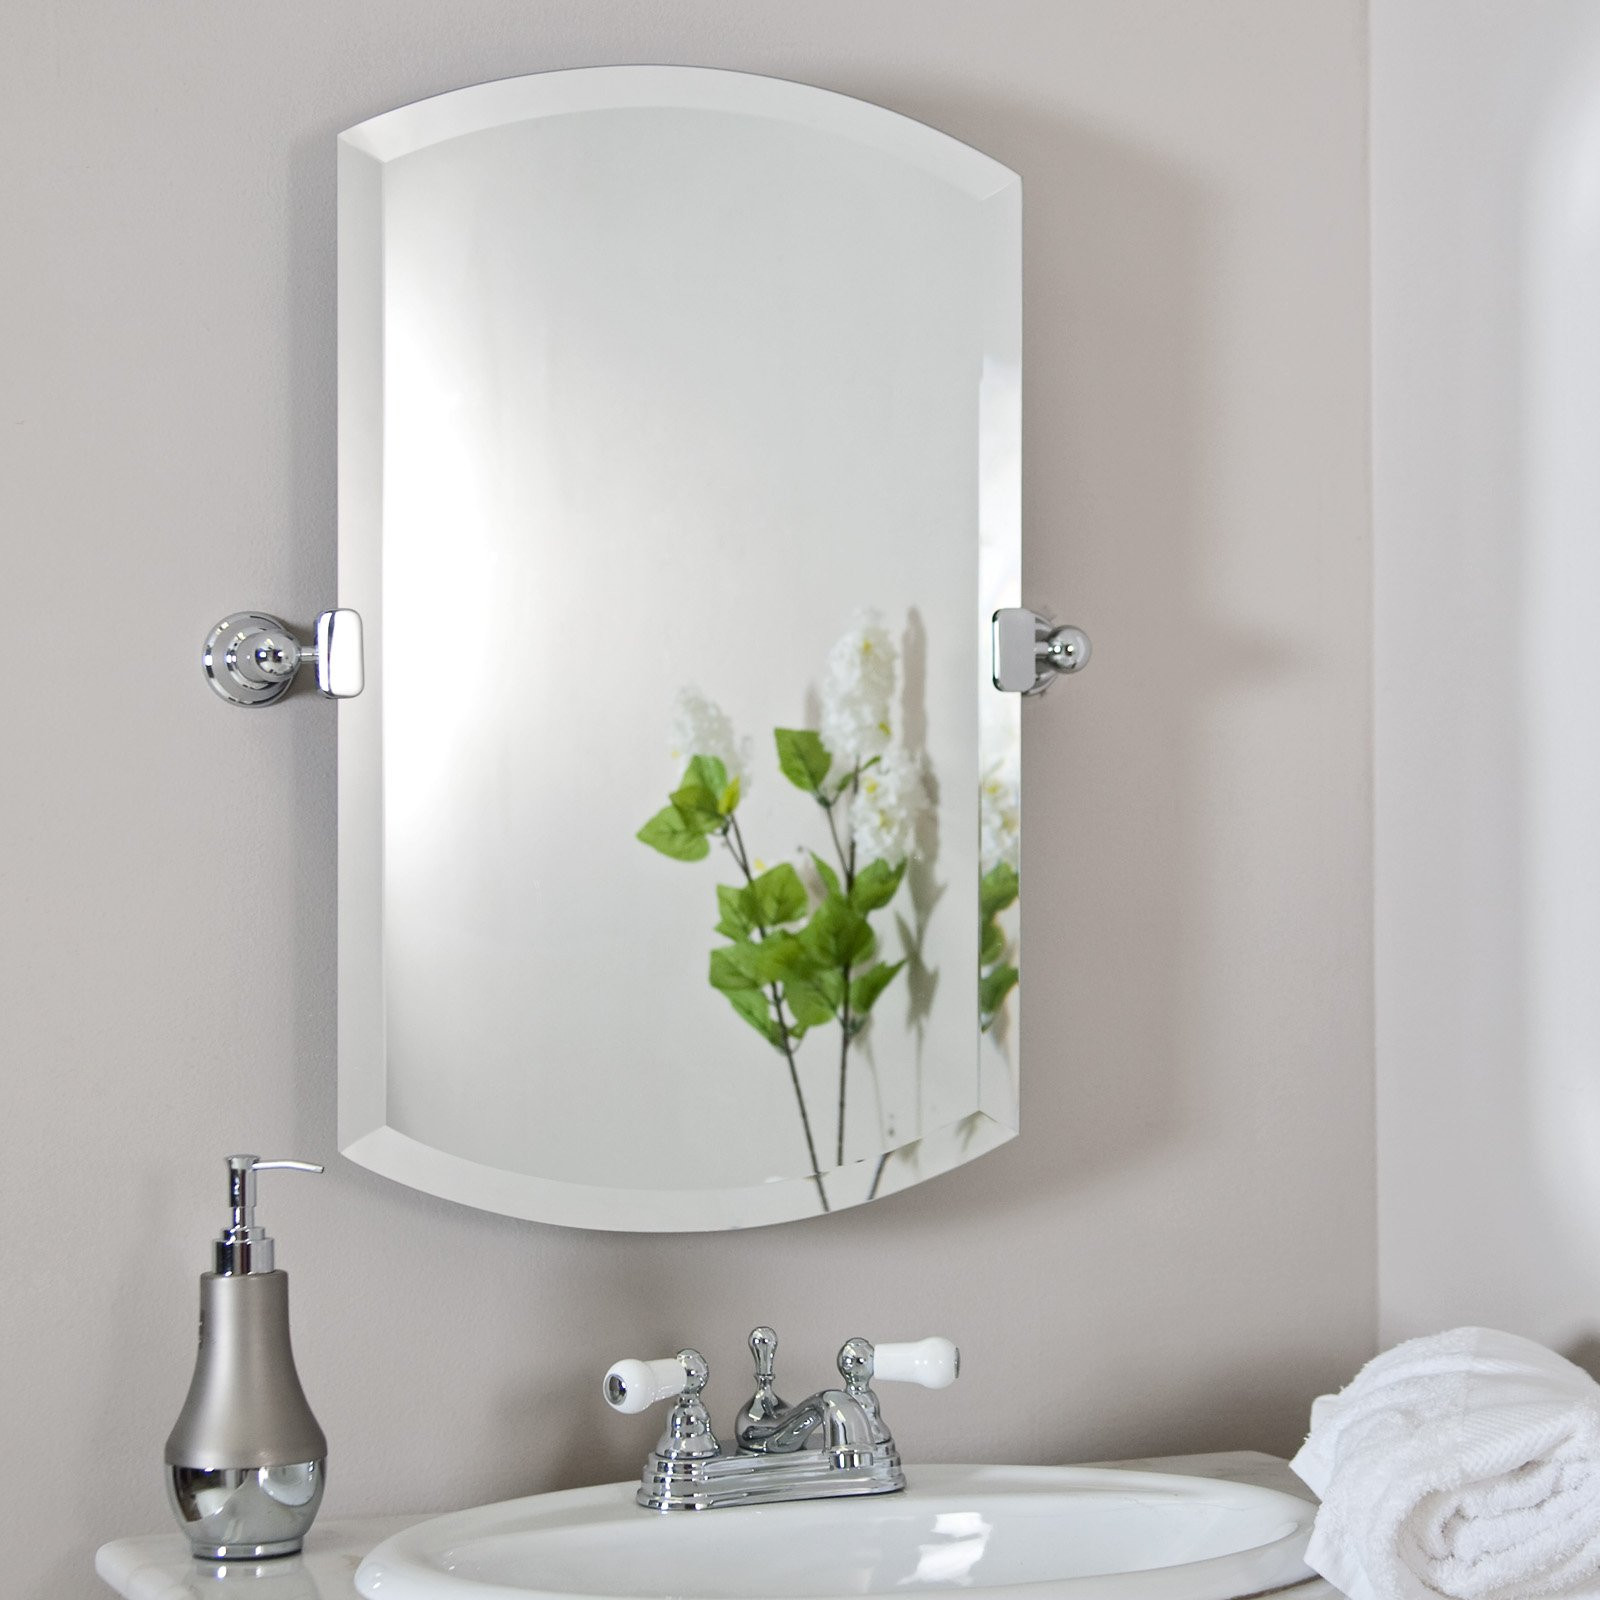 Bathroom Vanity Mirror Ideas
 Bathroom Mirror Designs and Decorative Ideas